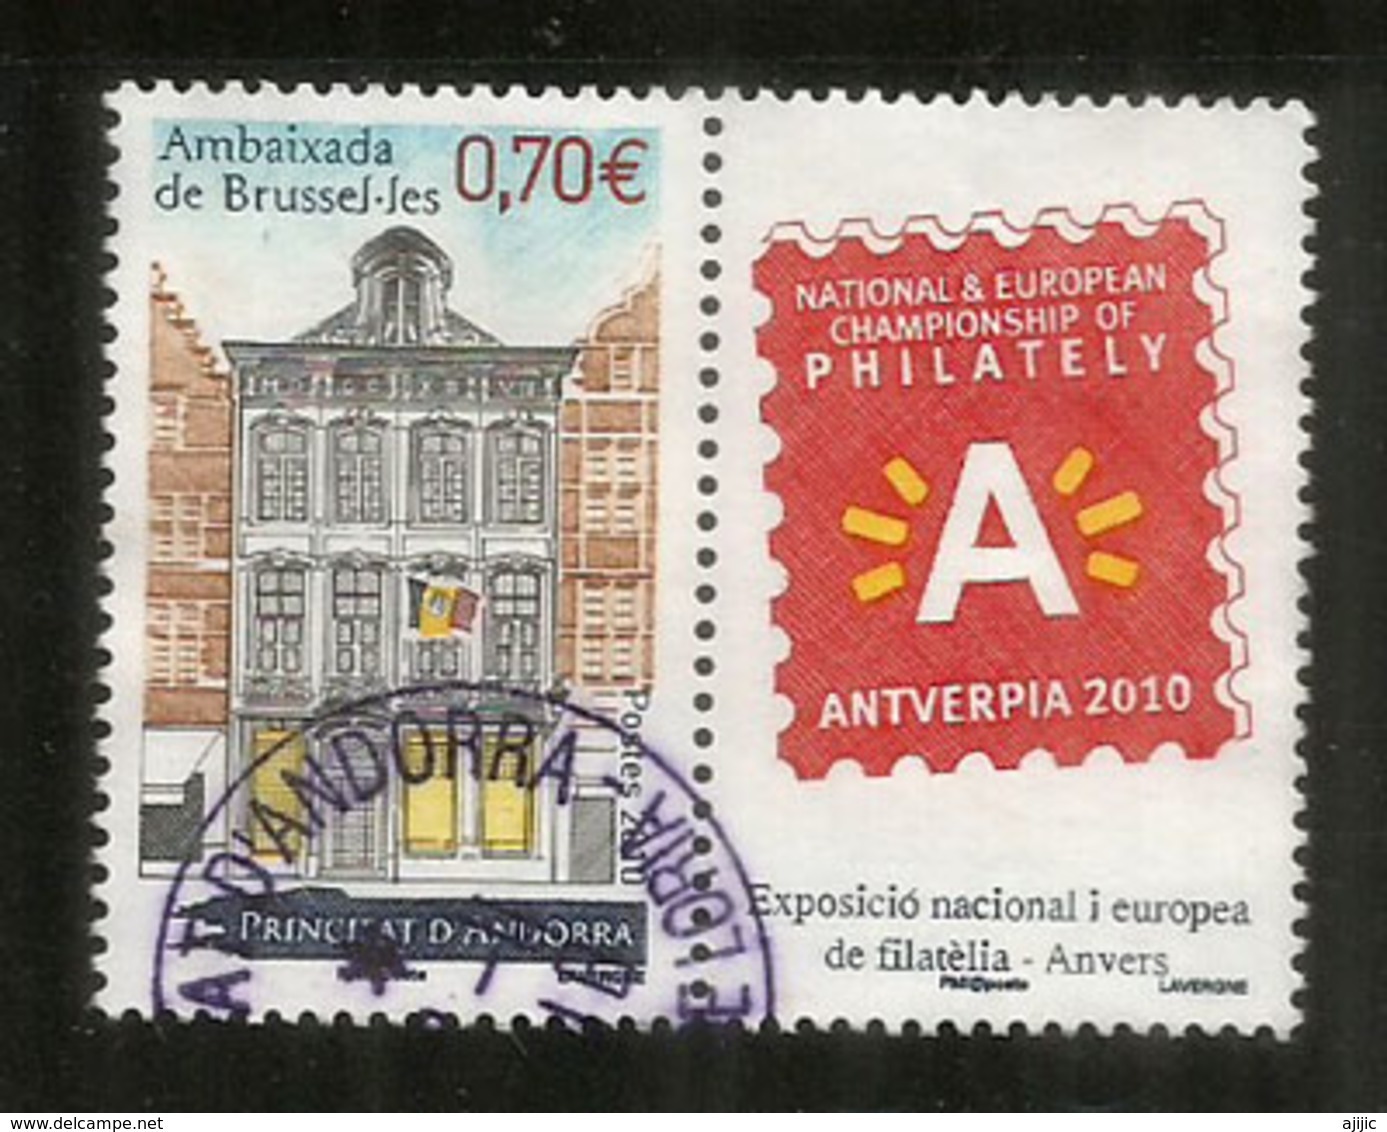 Ambassade D'Andorre à Bruxelles, Un Timbre Oblitéré Avec Vignette Antverpia 2010, 1 ère Qualité - Used Stamps